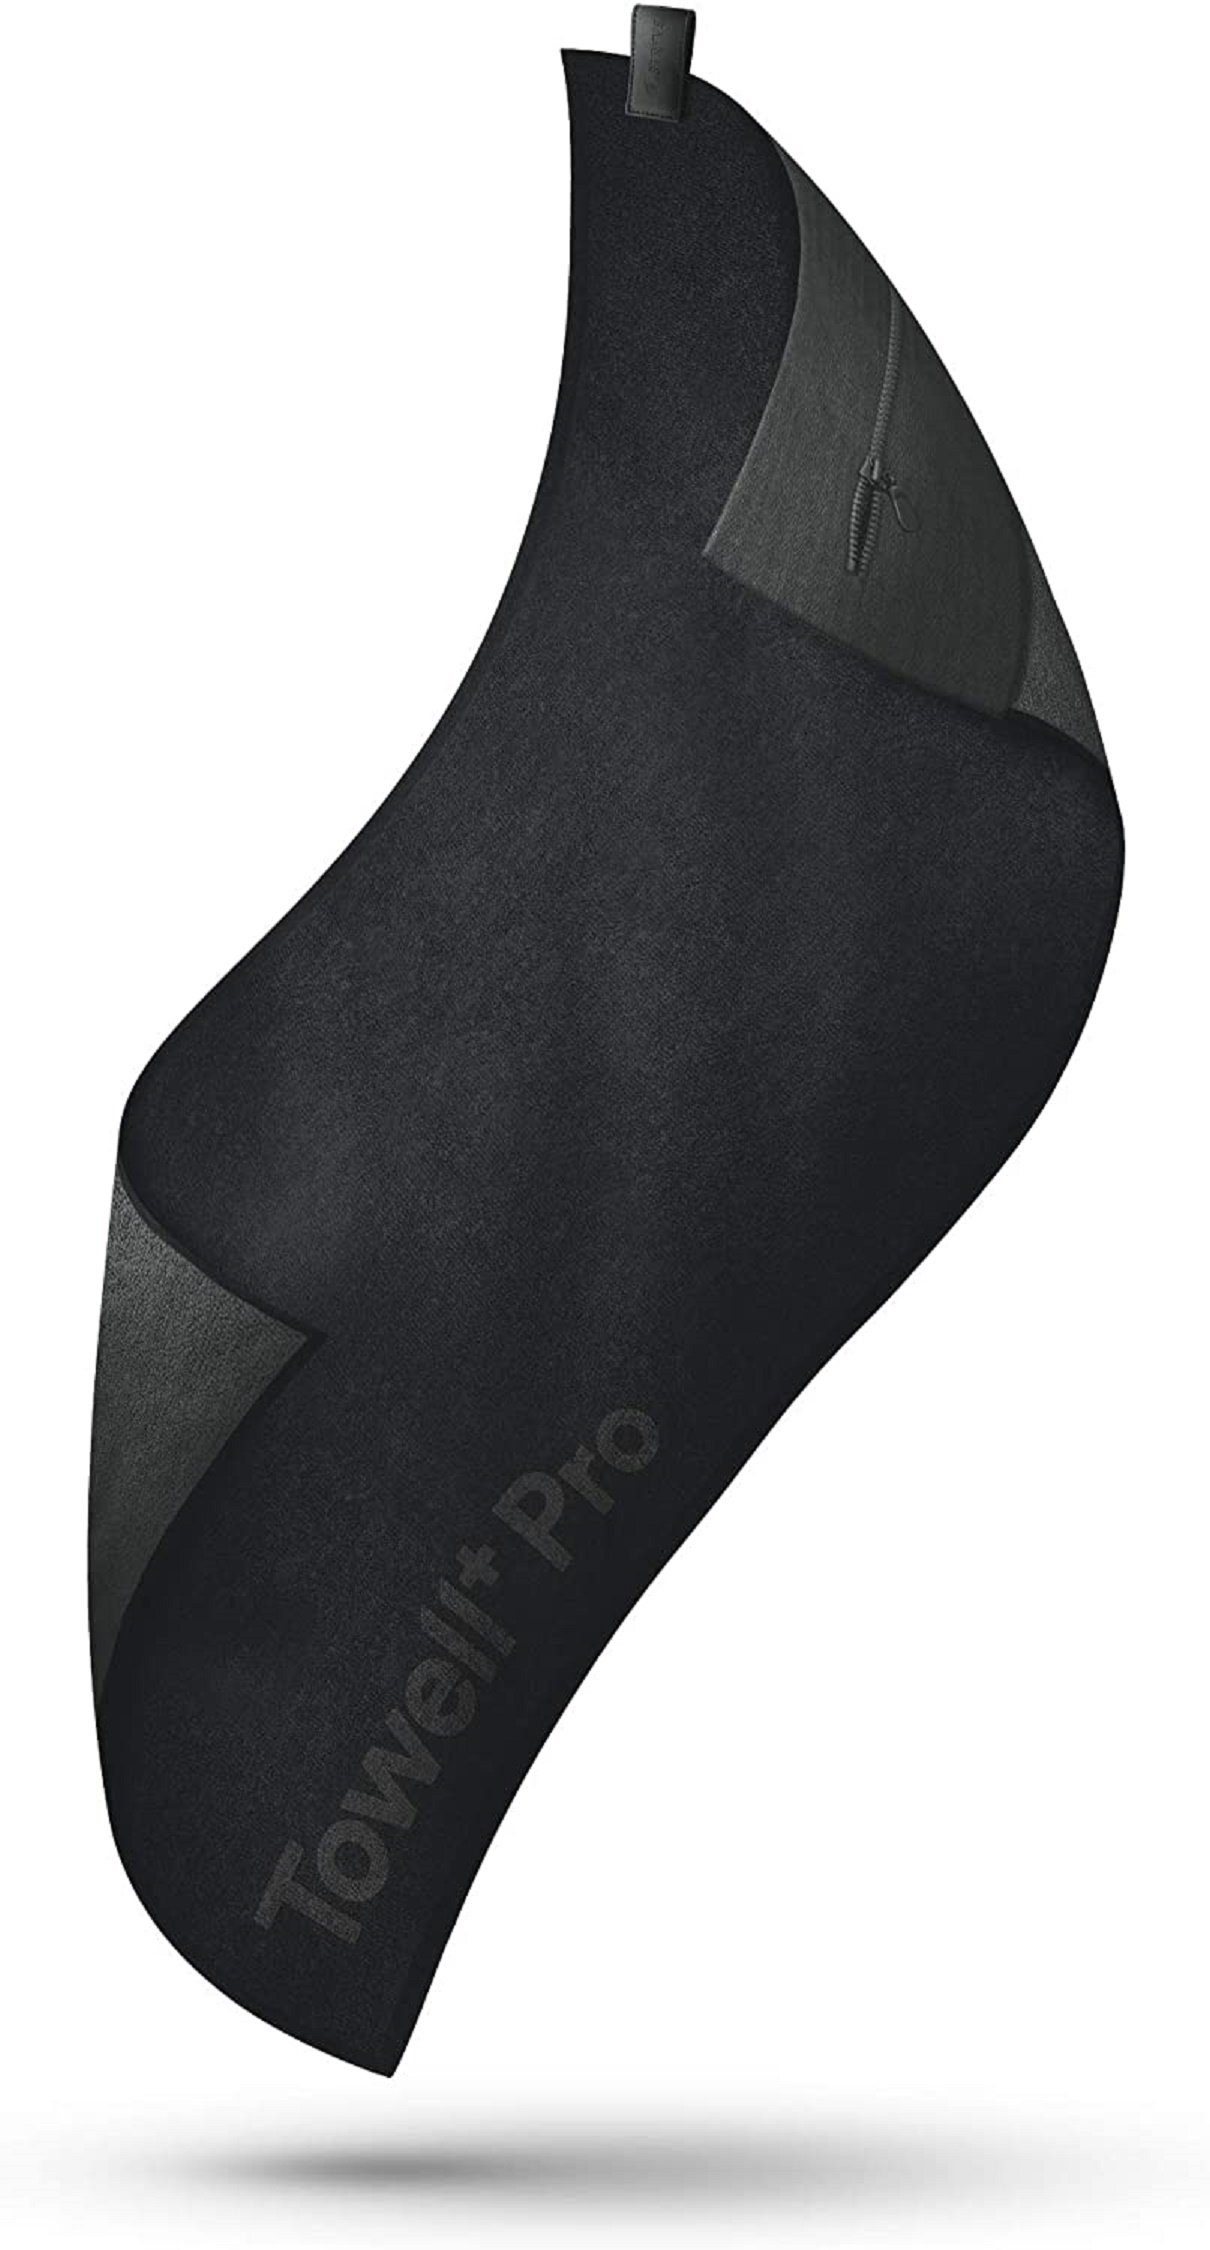 Stryve Sporthandtuch Towell + Pro (105 cm x 42,5 cm) All Black, mit Magnet, Tasche + Rutschschutz